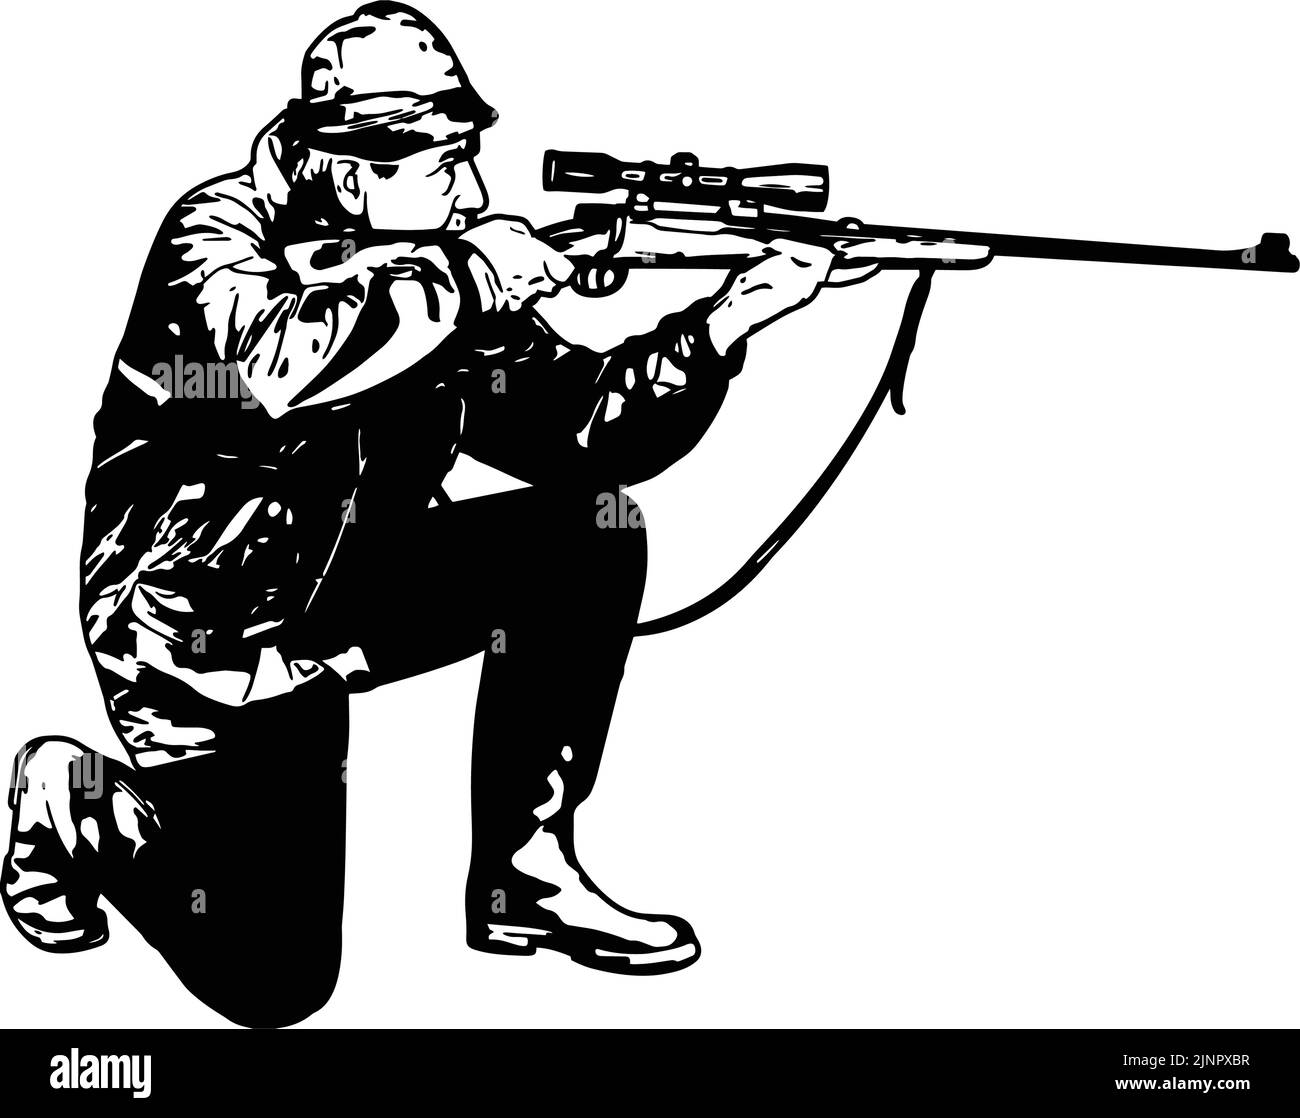 cazador arrodillado y apuntando a un francotirador - croquis - vector Ilustración del Vector